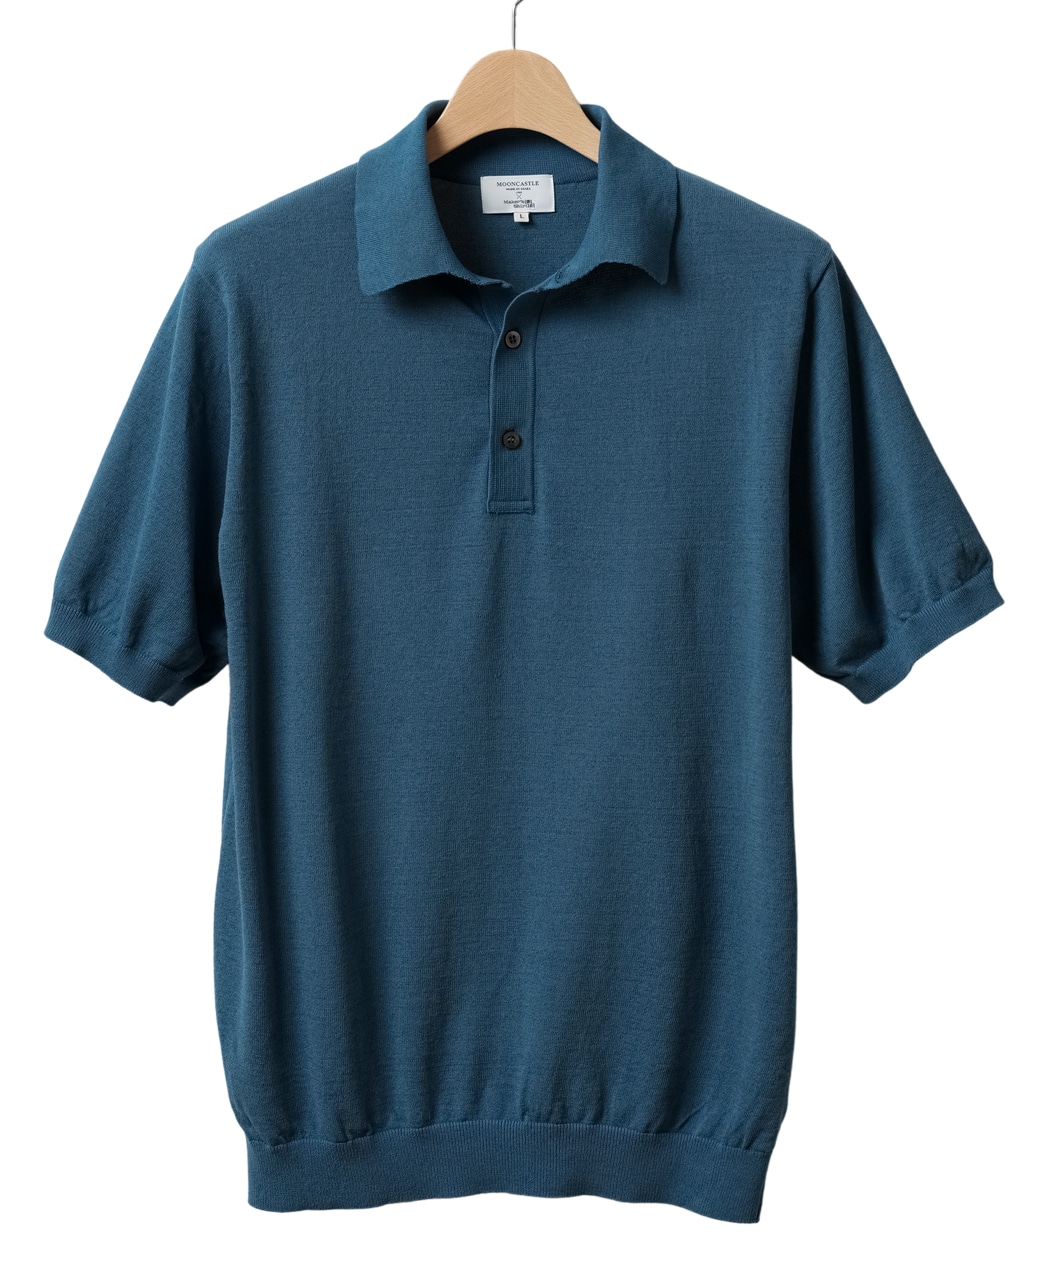 鎌倉シャツ 半袖シャツ 全種類 | メーカーズシャツ鎌倉 公式通販 